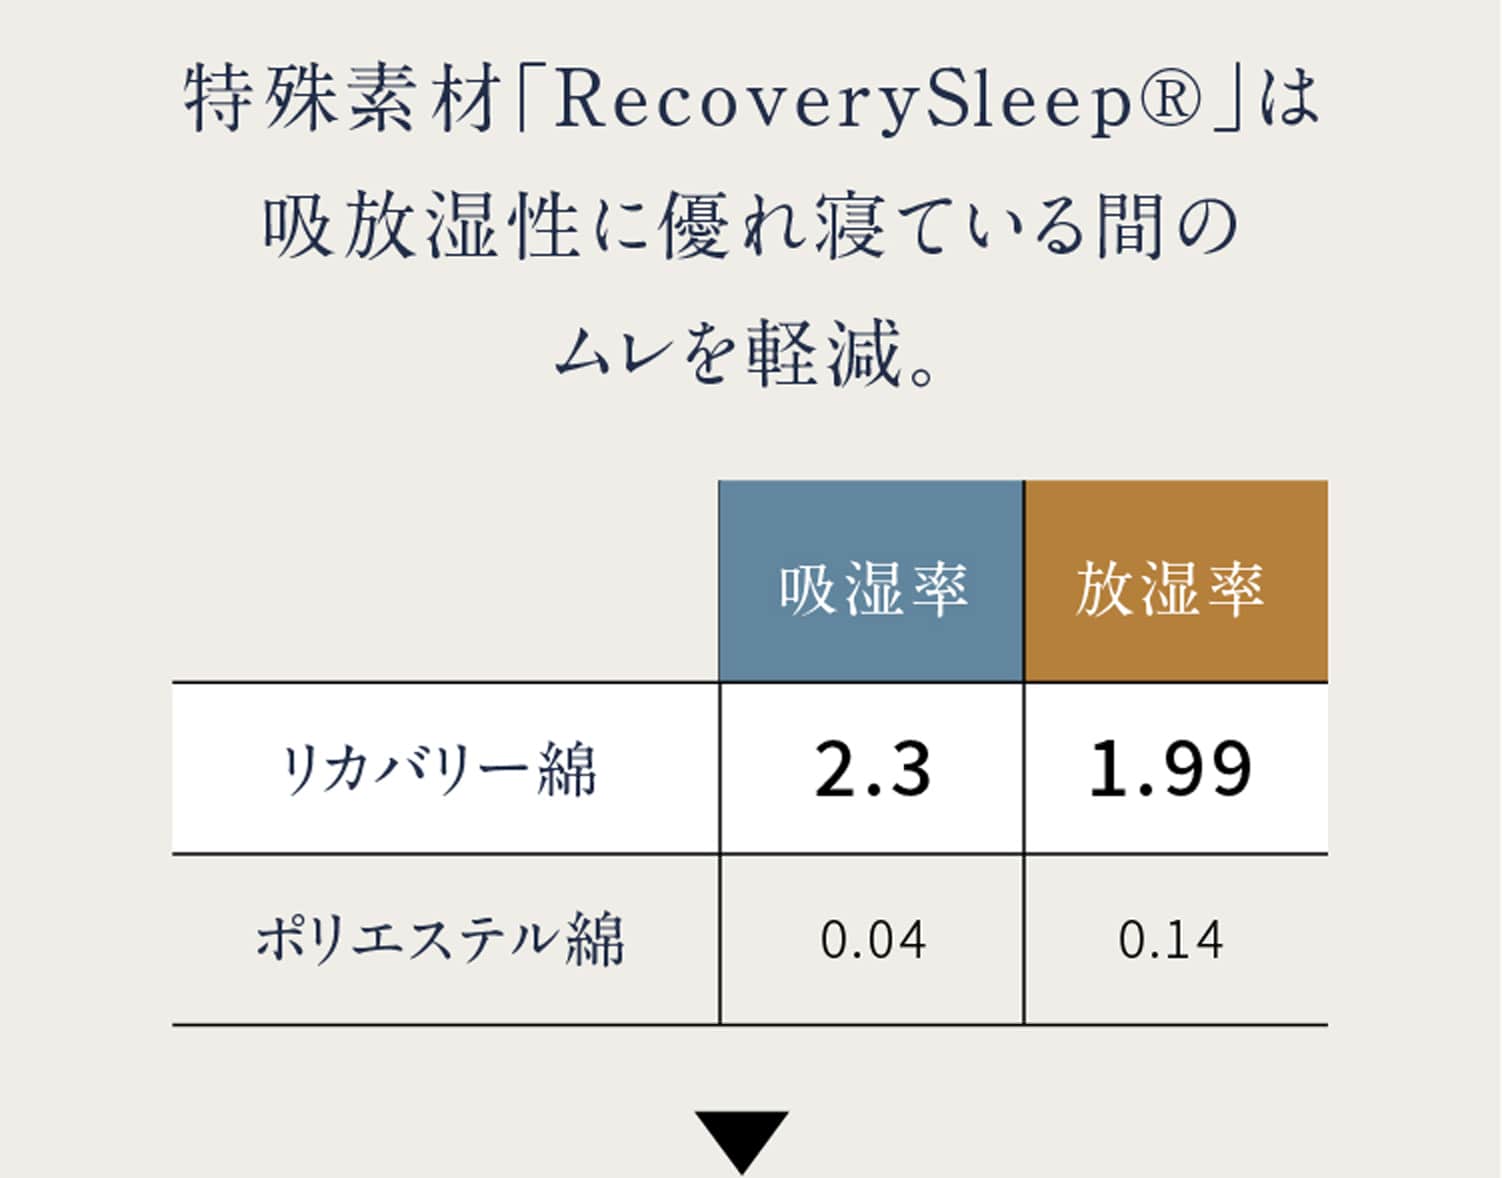 特殊素材「RecoverySleep®」は吸放湿性に優れ寝ている間のムレを軽減。